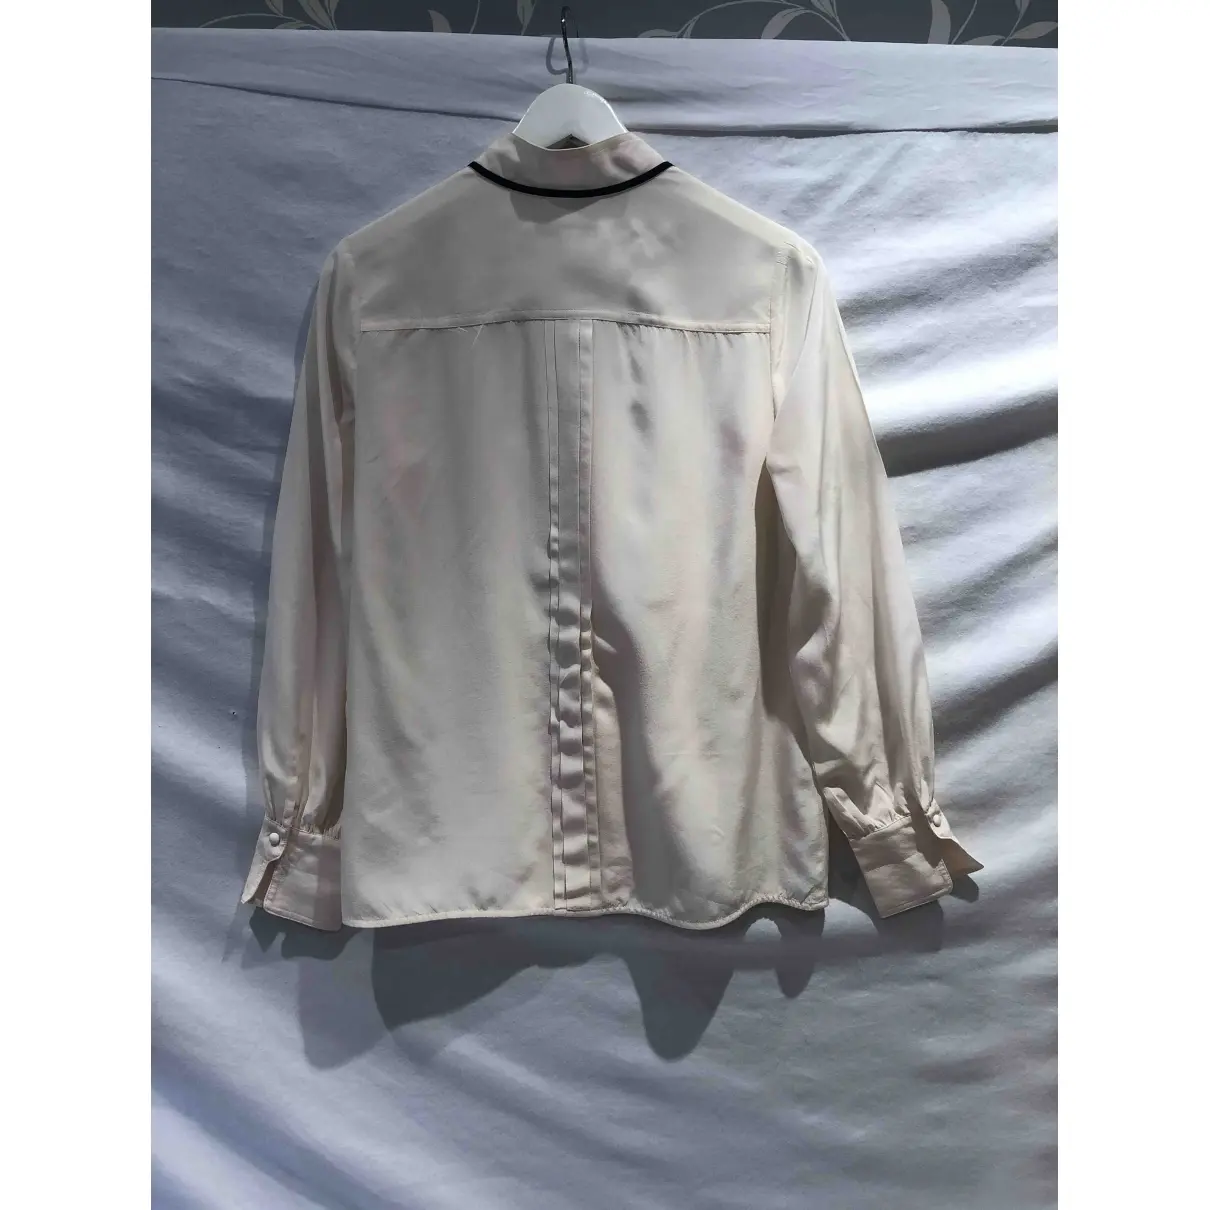 Lk Bennett Silk blouse for sale